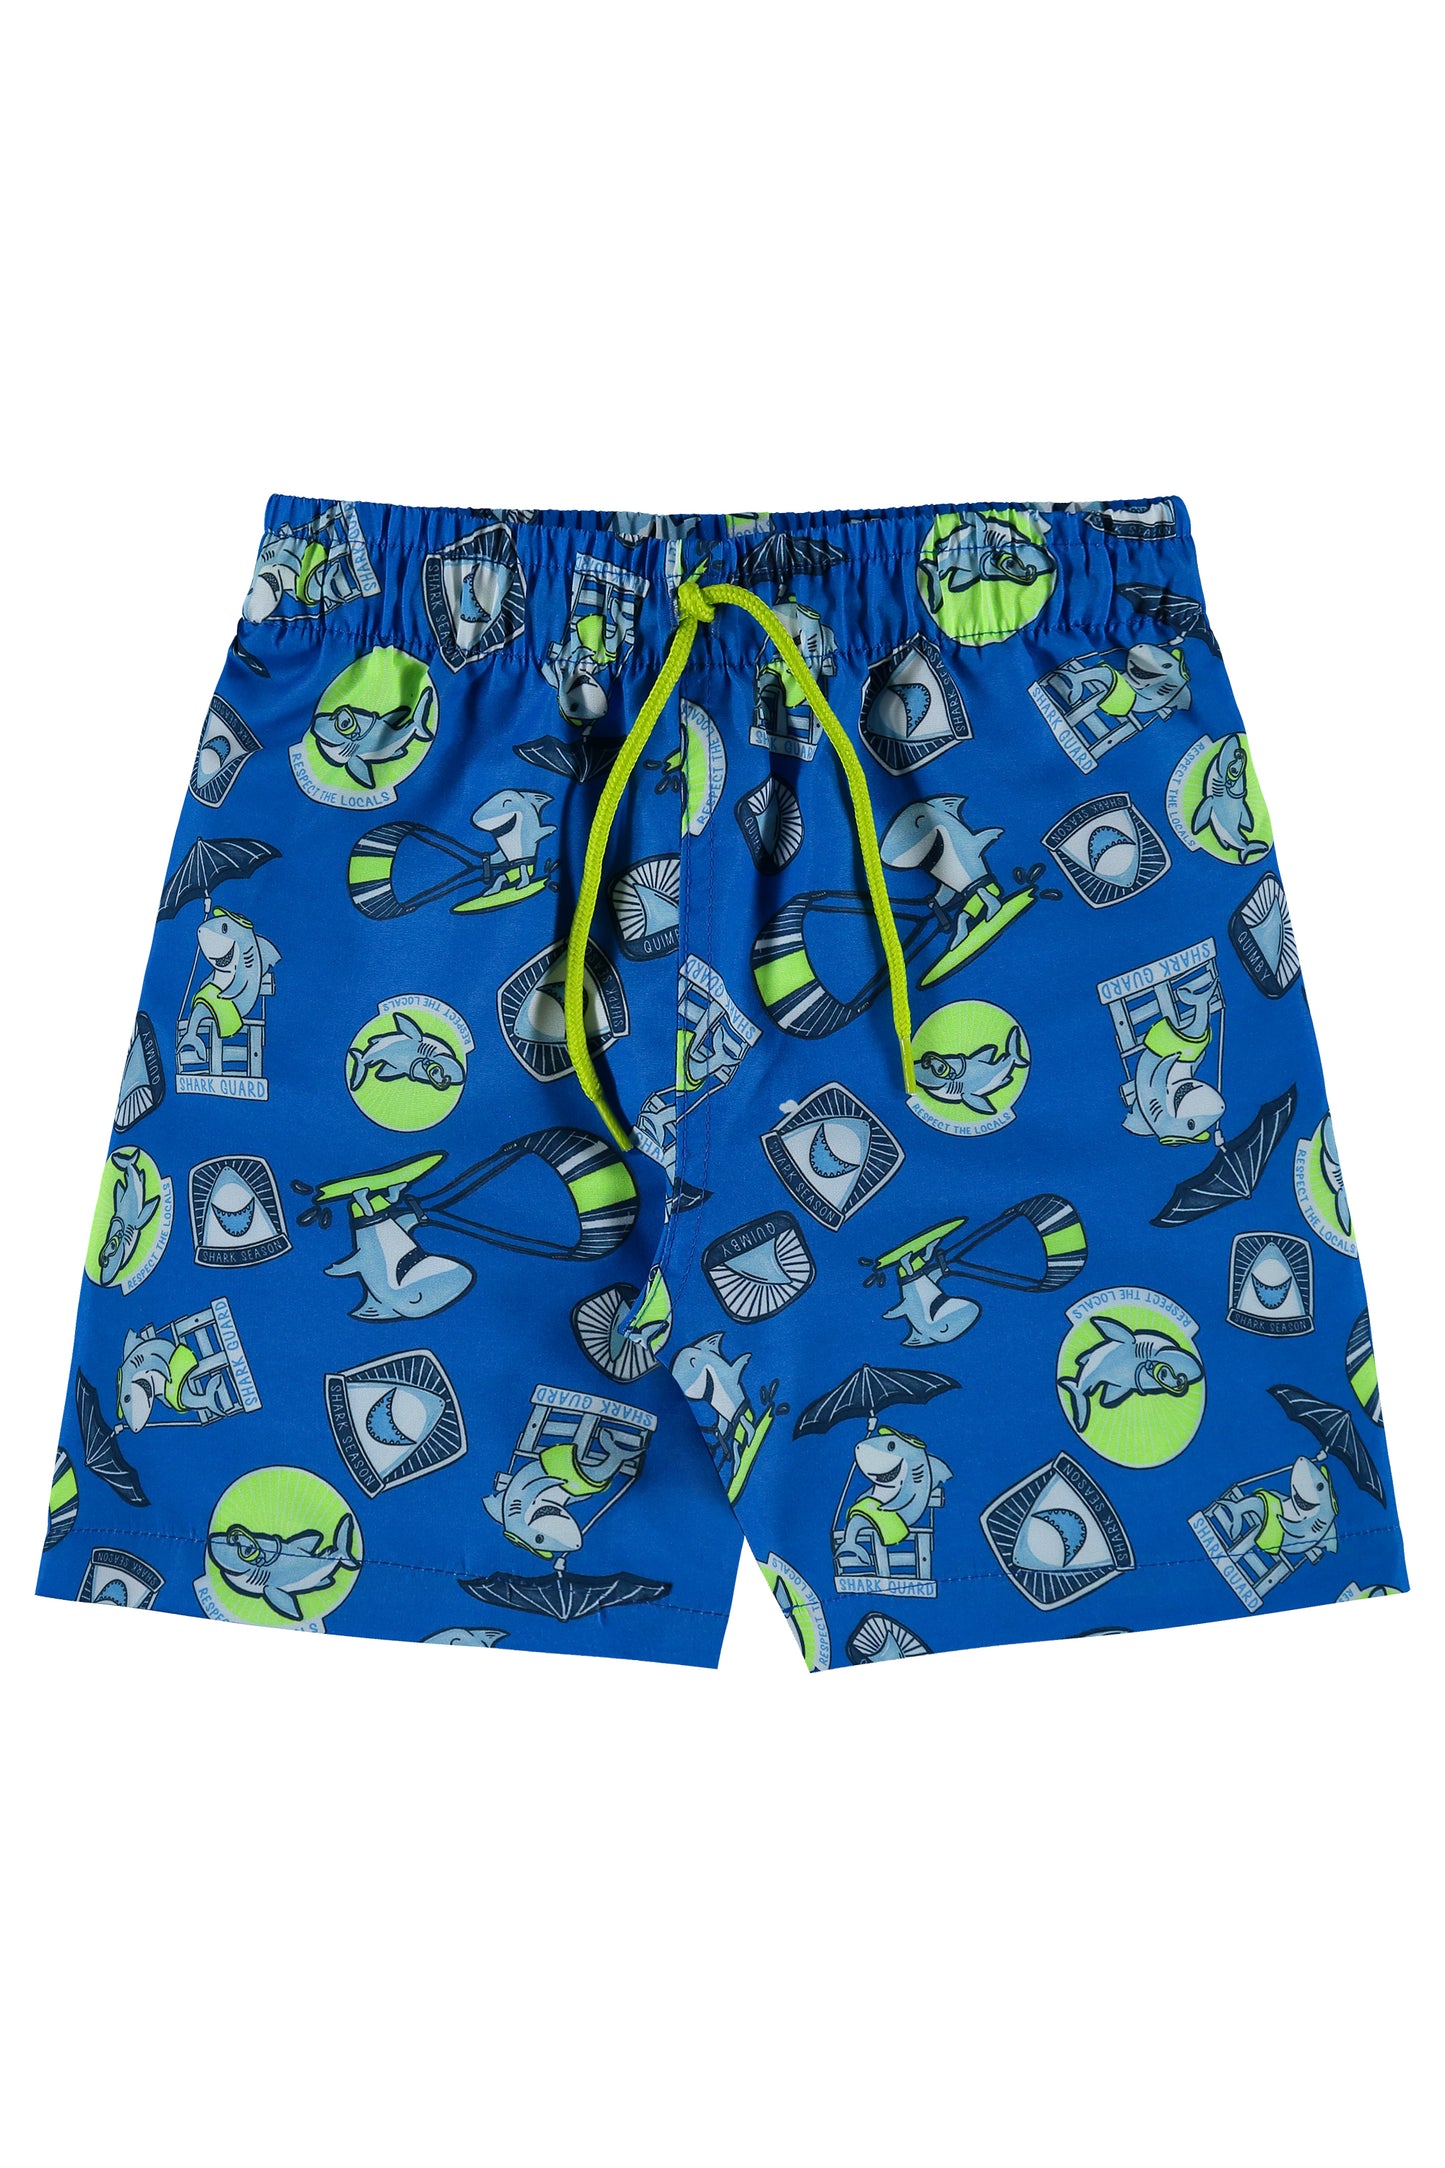 UPF 50 Neon Green Swim Top & Shark Swim Shorts